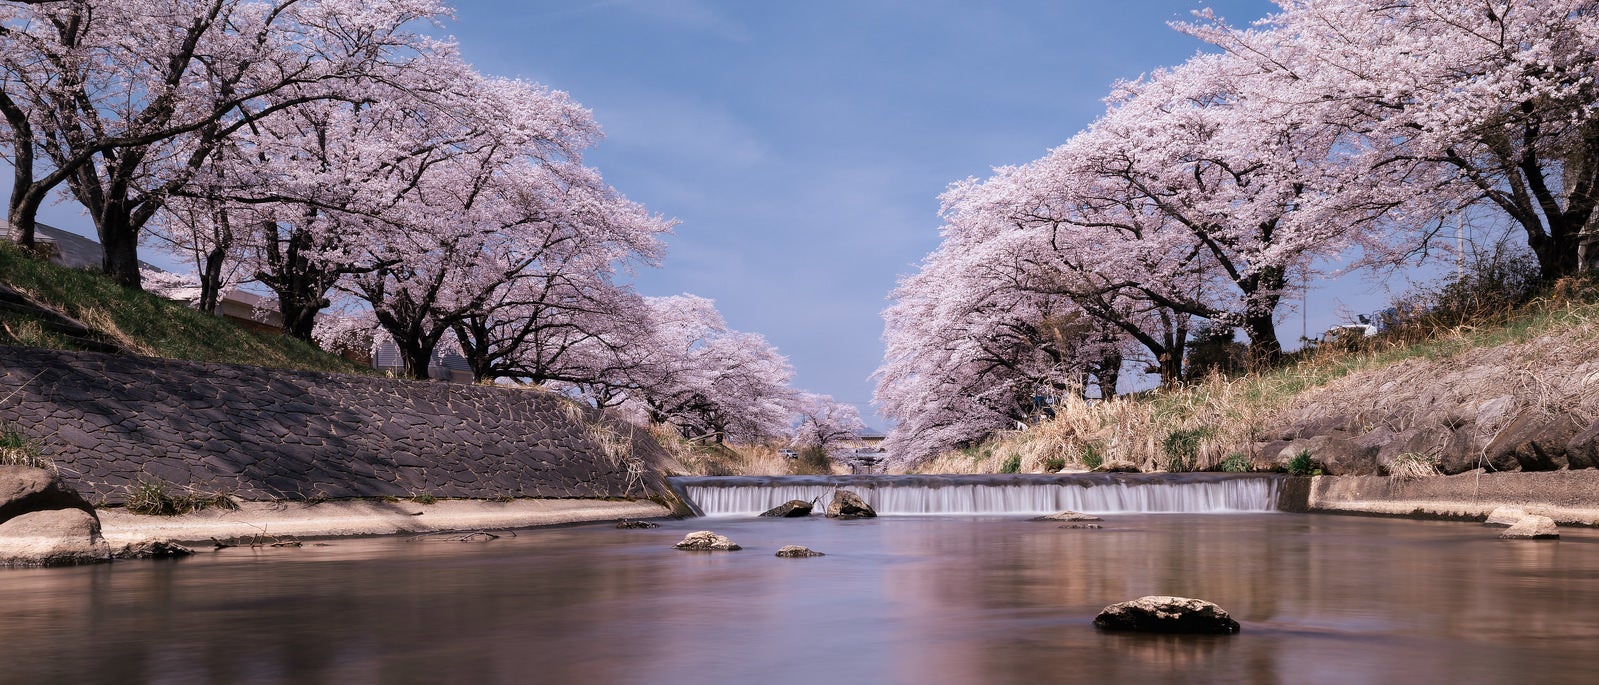 「両岸にずらりと並ぶ藤田川の桜並木」の写真